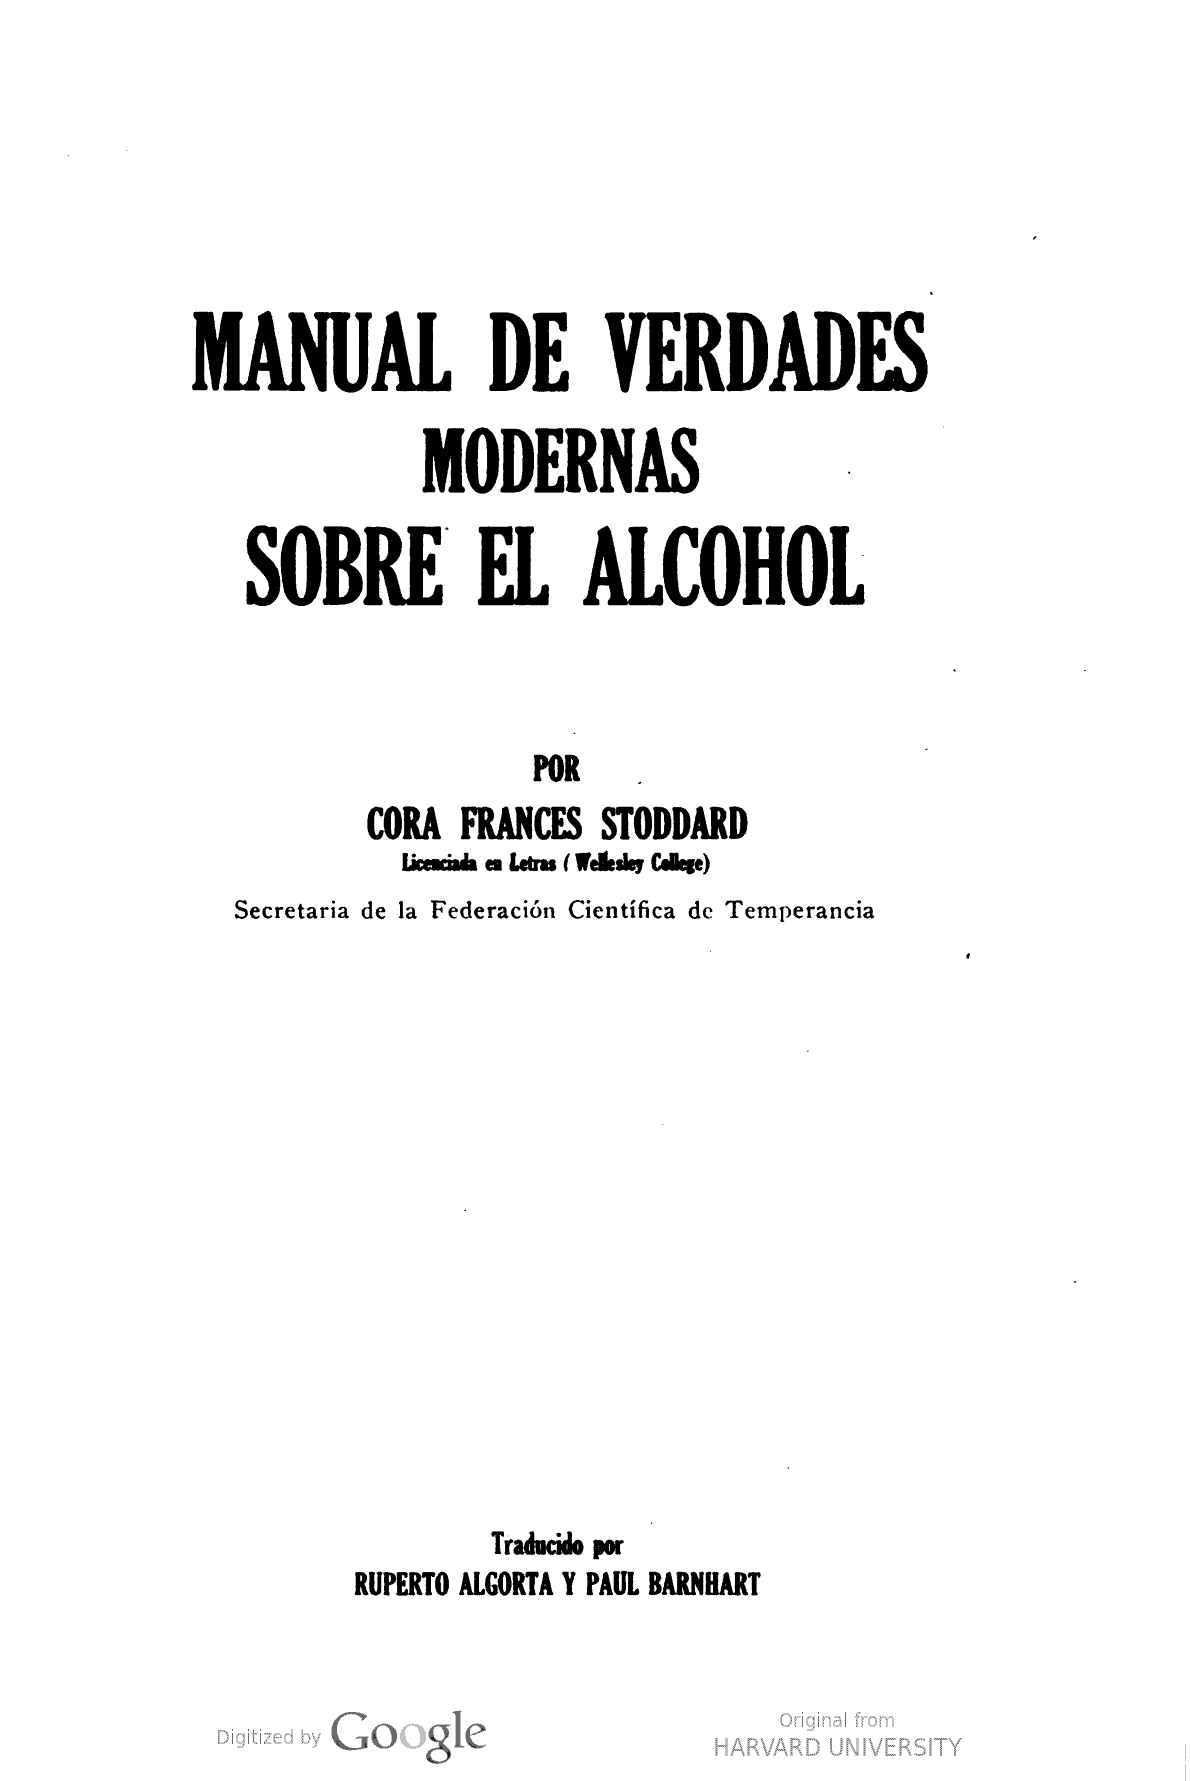 Manual de verdades modernas sobre el alcohol